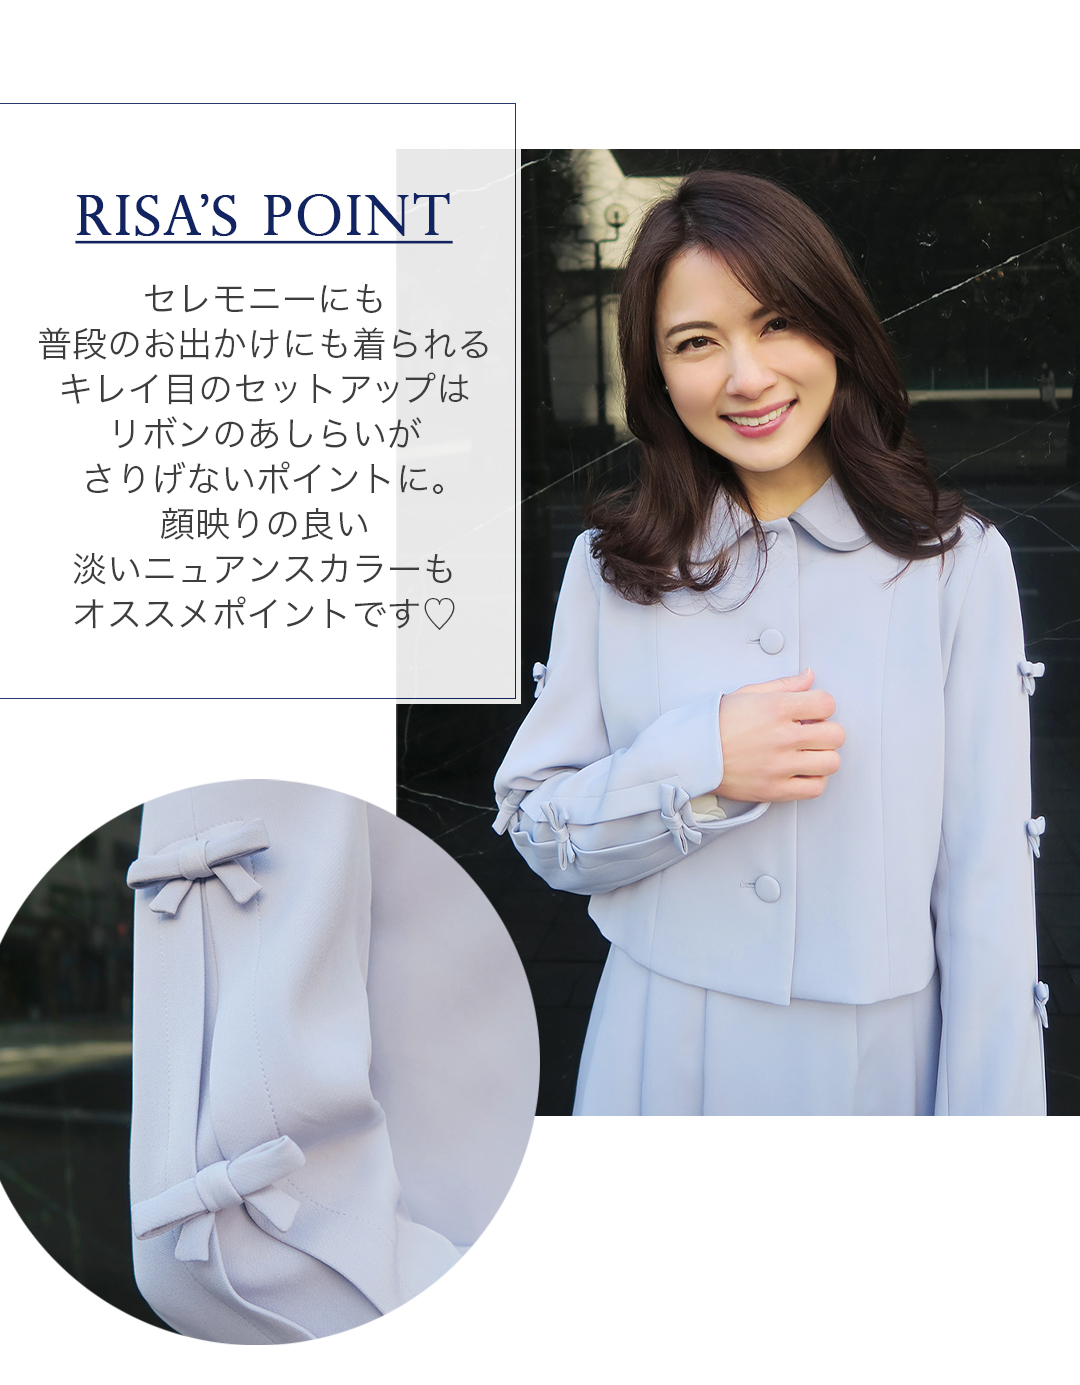 RISA'S POINT
セレモニーにも普段のお出かけにも着られるキレイ目のセットアップはリボンのあしらいがさりげないポイントに。顔映りの良い淡いニュアンスカラーもオススメポイントです